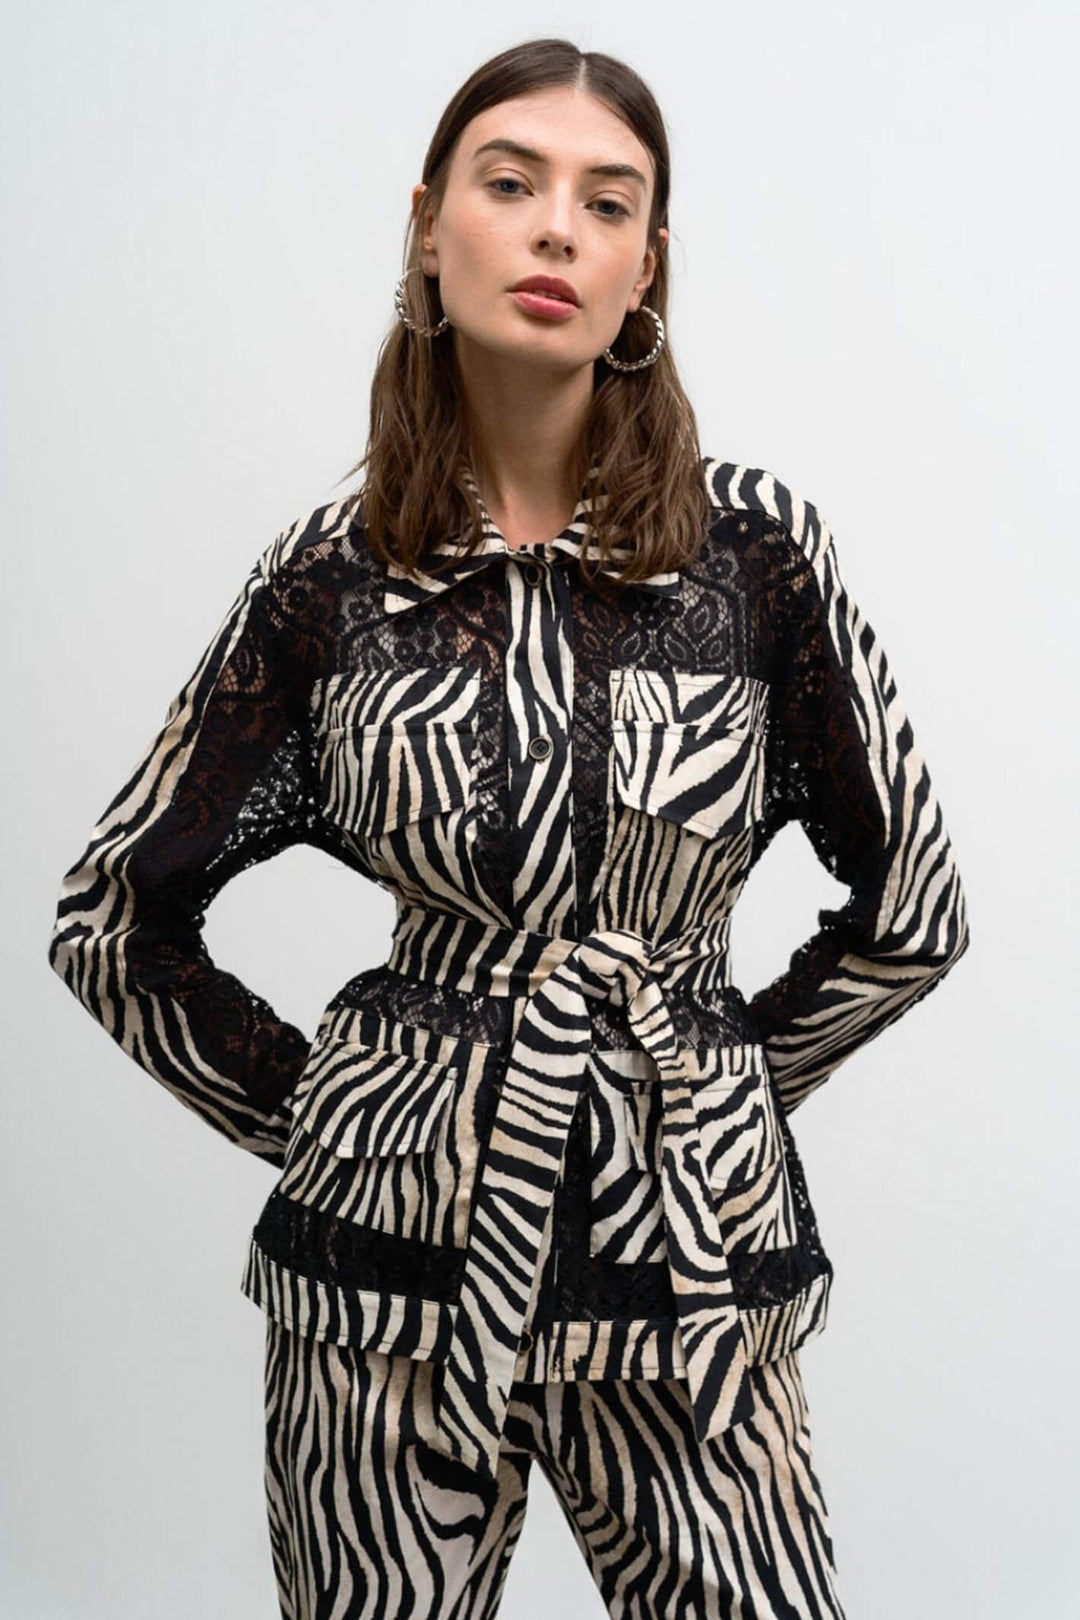 Access Fashion 1033 Beige Zebra Print Lace Jacket - Experience Boutique